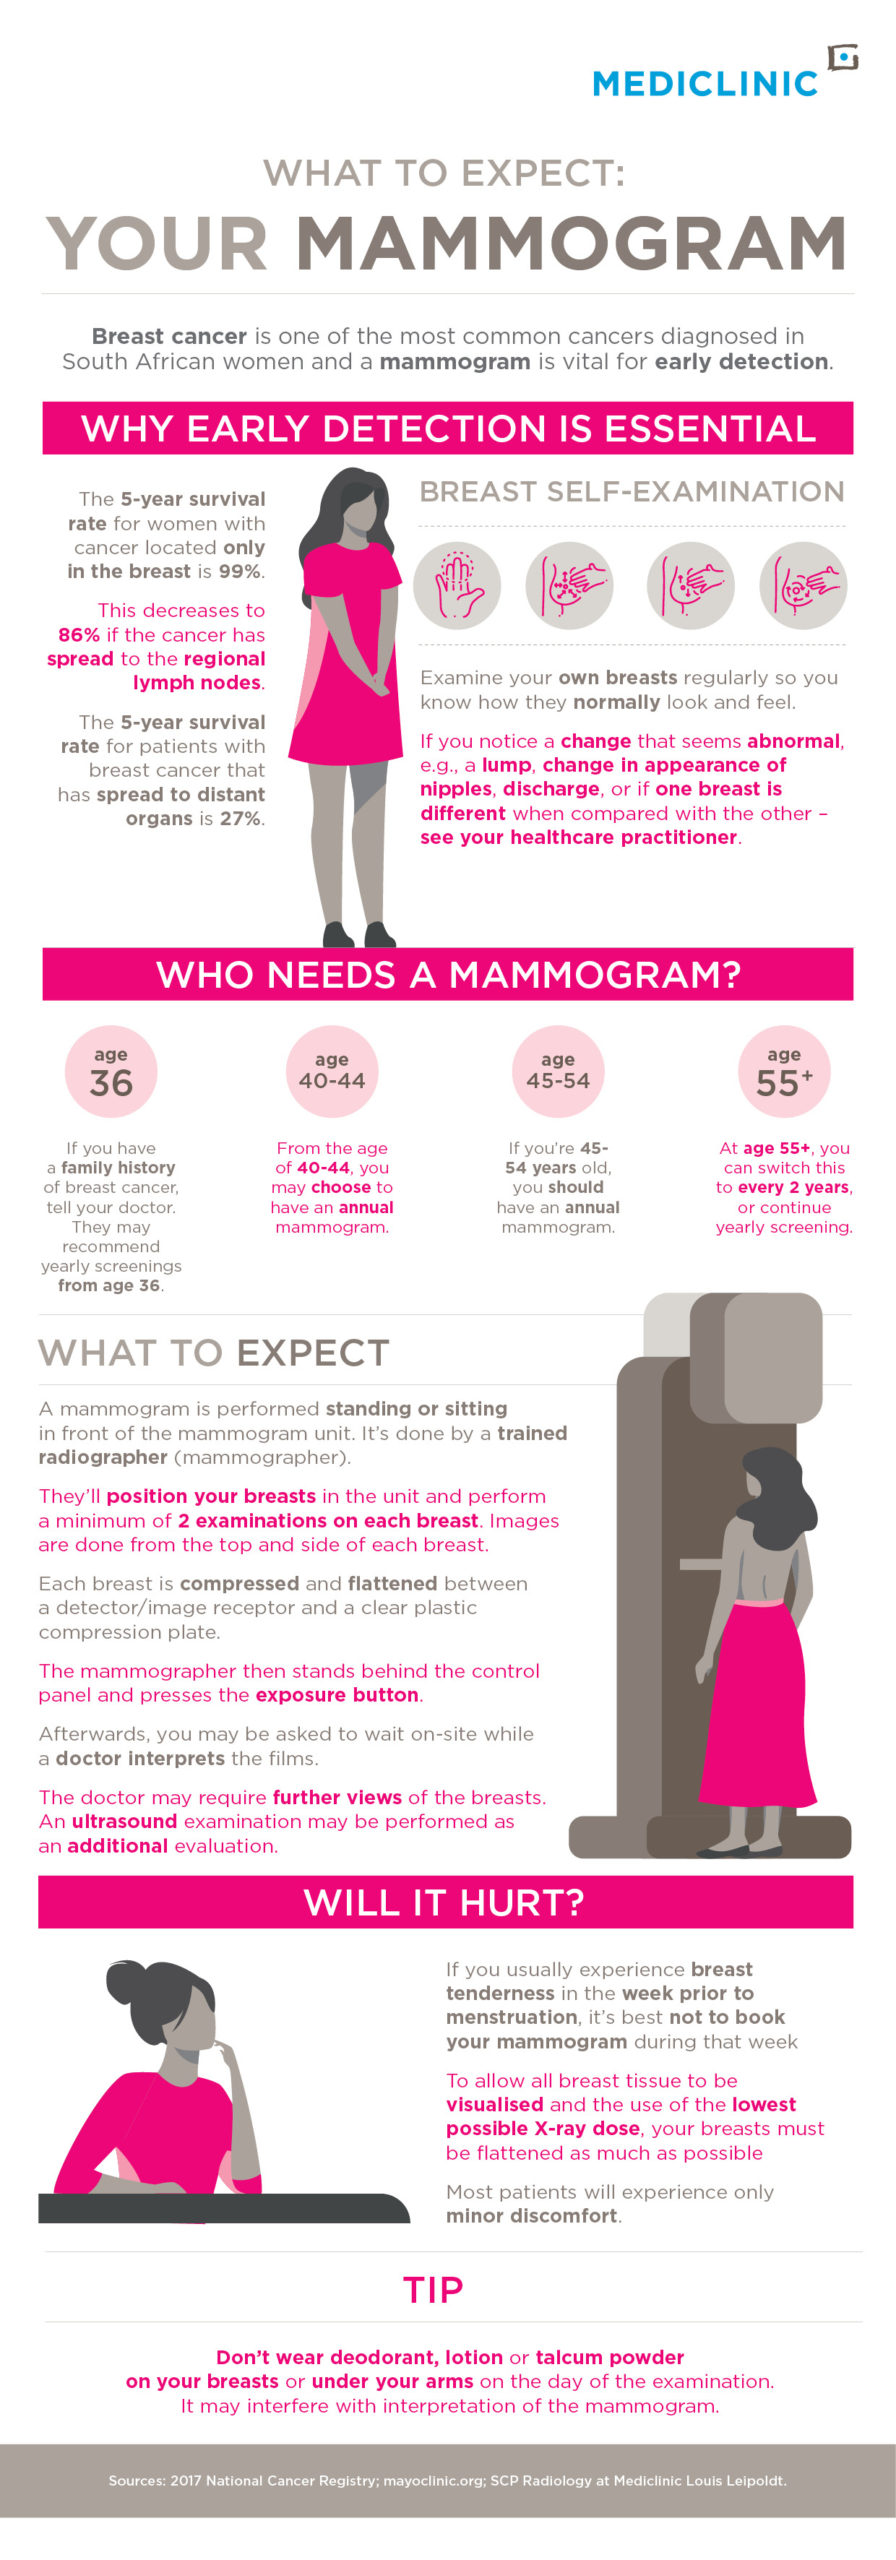 Mammogram Guidelines: How Often Should Women Schedule Screenings?